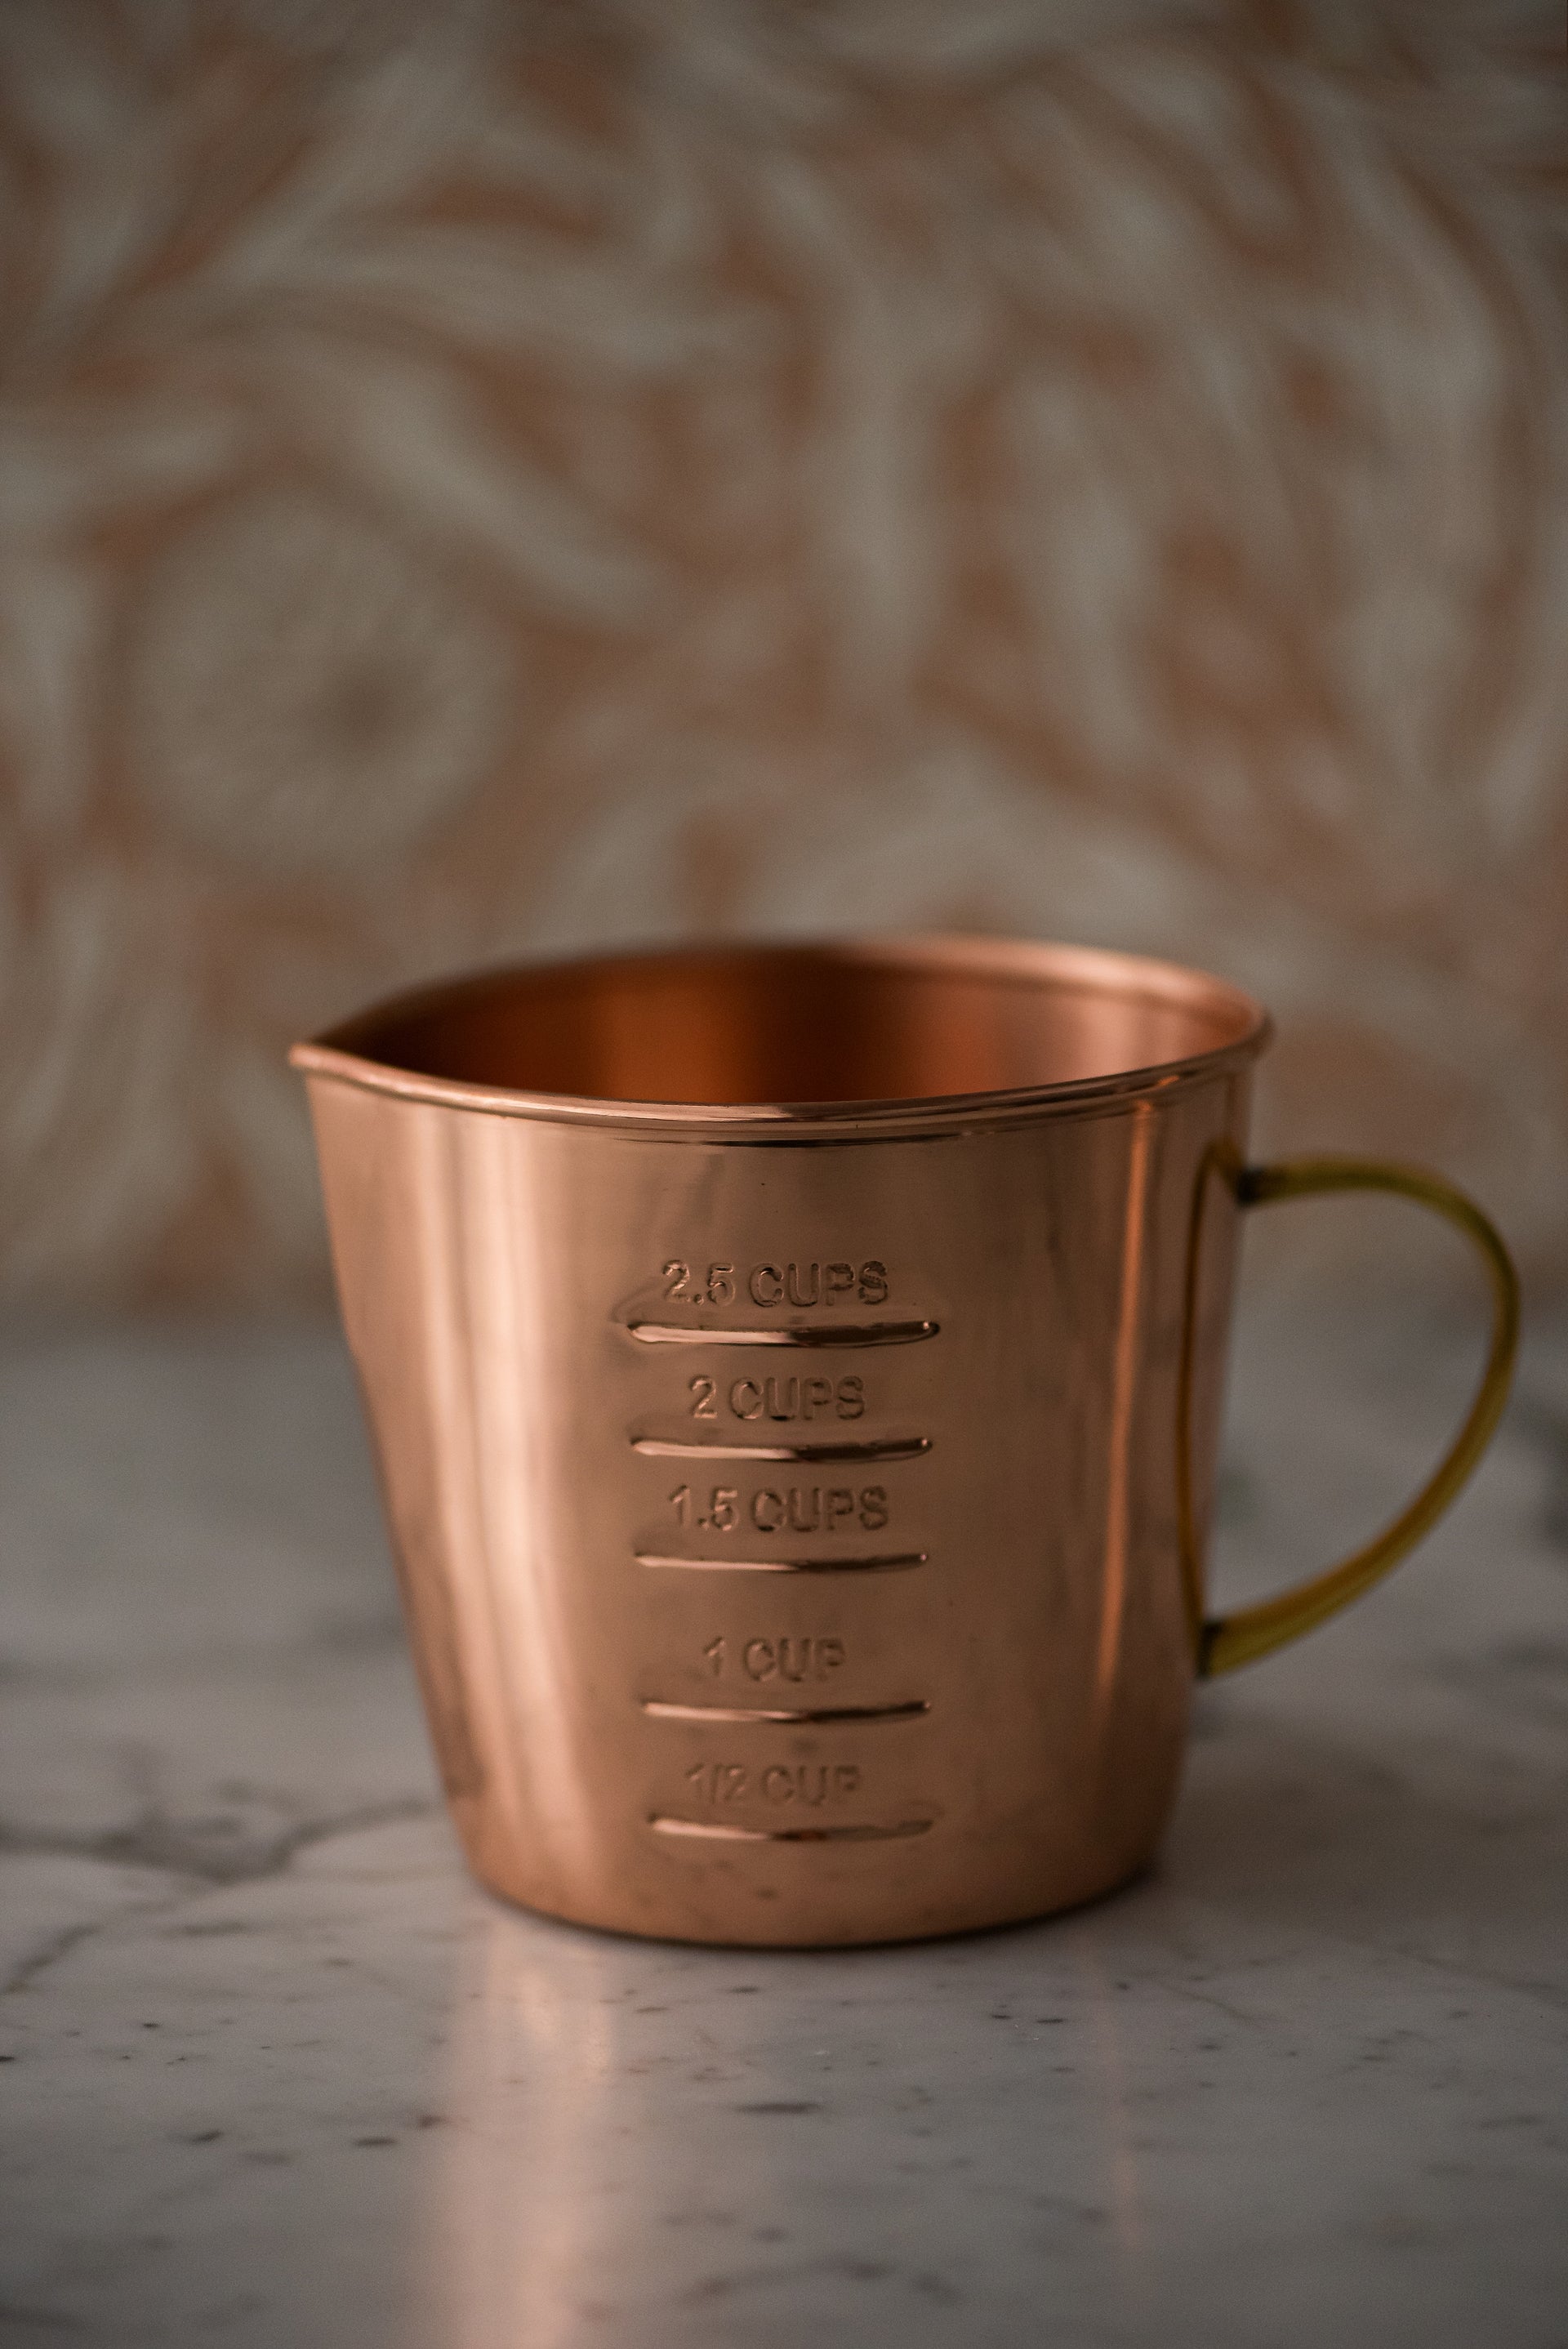 Liquid Measuring Cup Large Ornament – William Glen